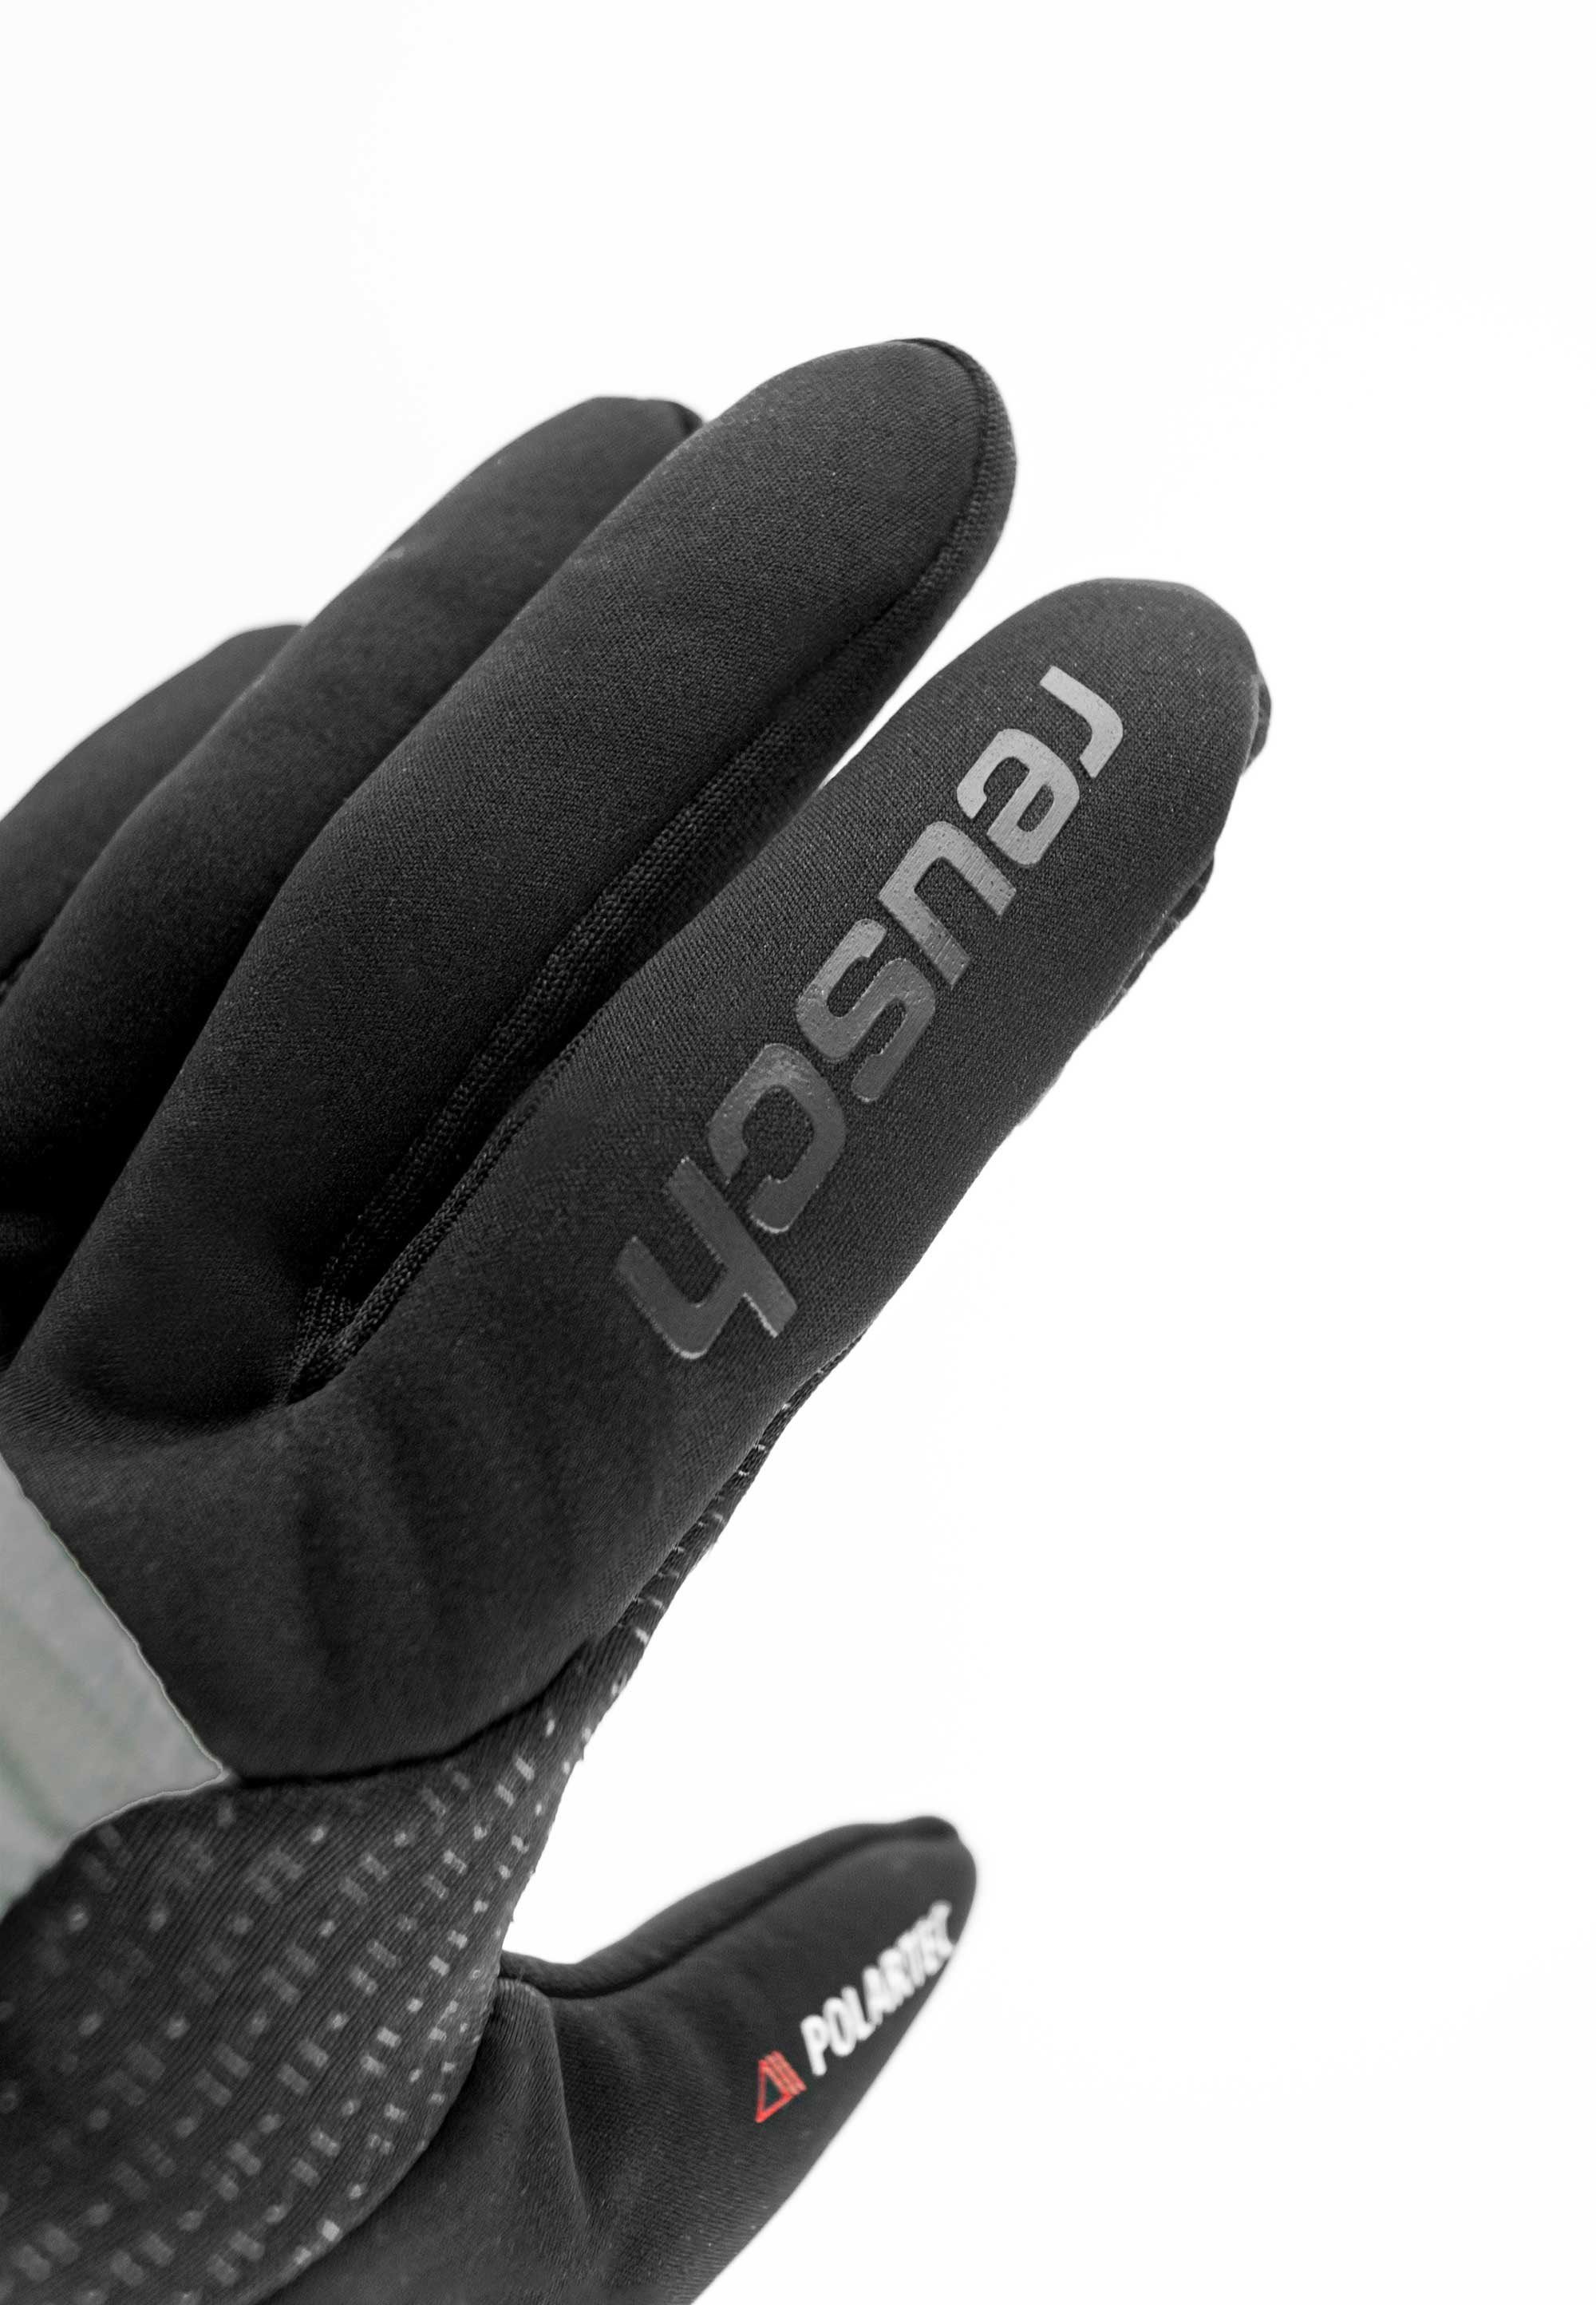 Reusch Skihandschuhe Garhwal mit Touchscreen-Funktion praktischer Hybrid grau-schwarz